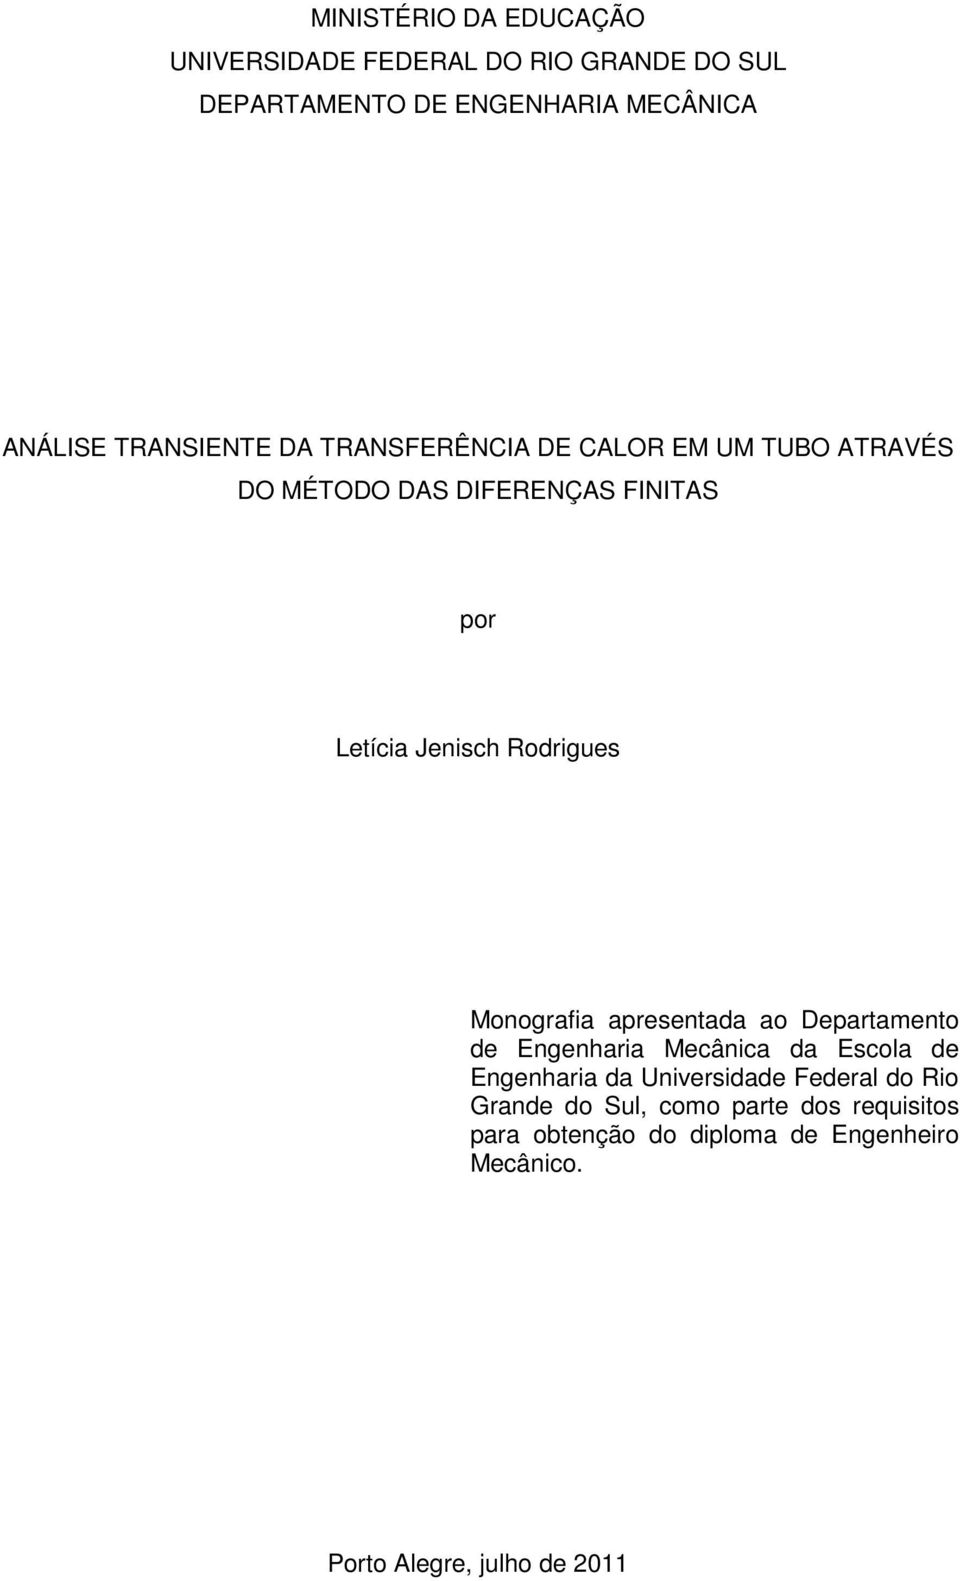 Rodrigues Moografia aresetada ao Deartameto de Egeharia Mecâica da Escola de Egeharia da Uiversidade